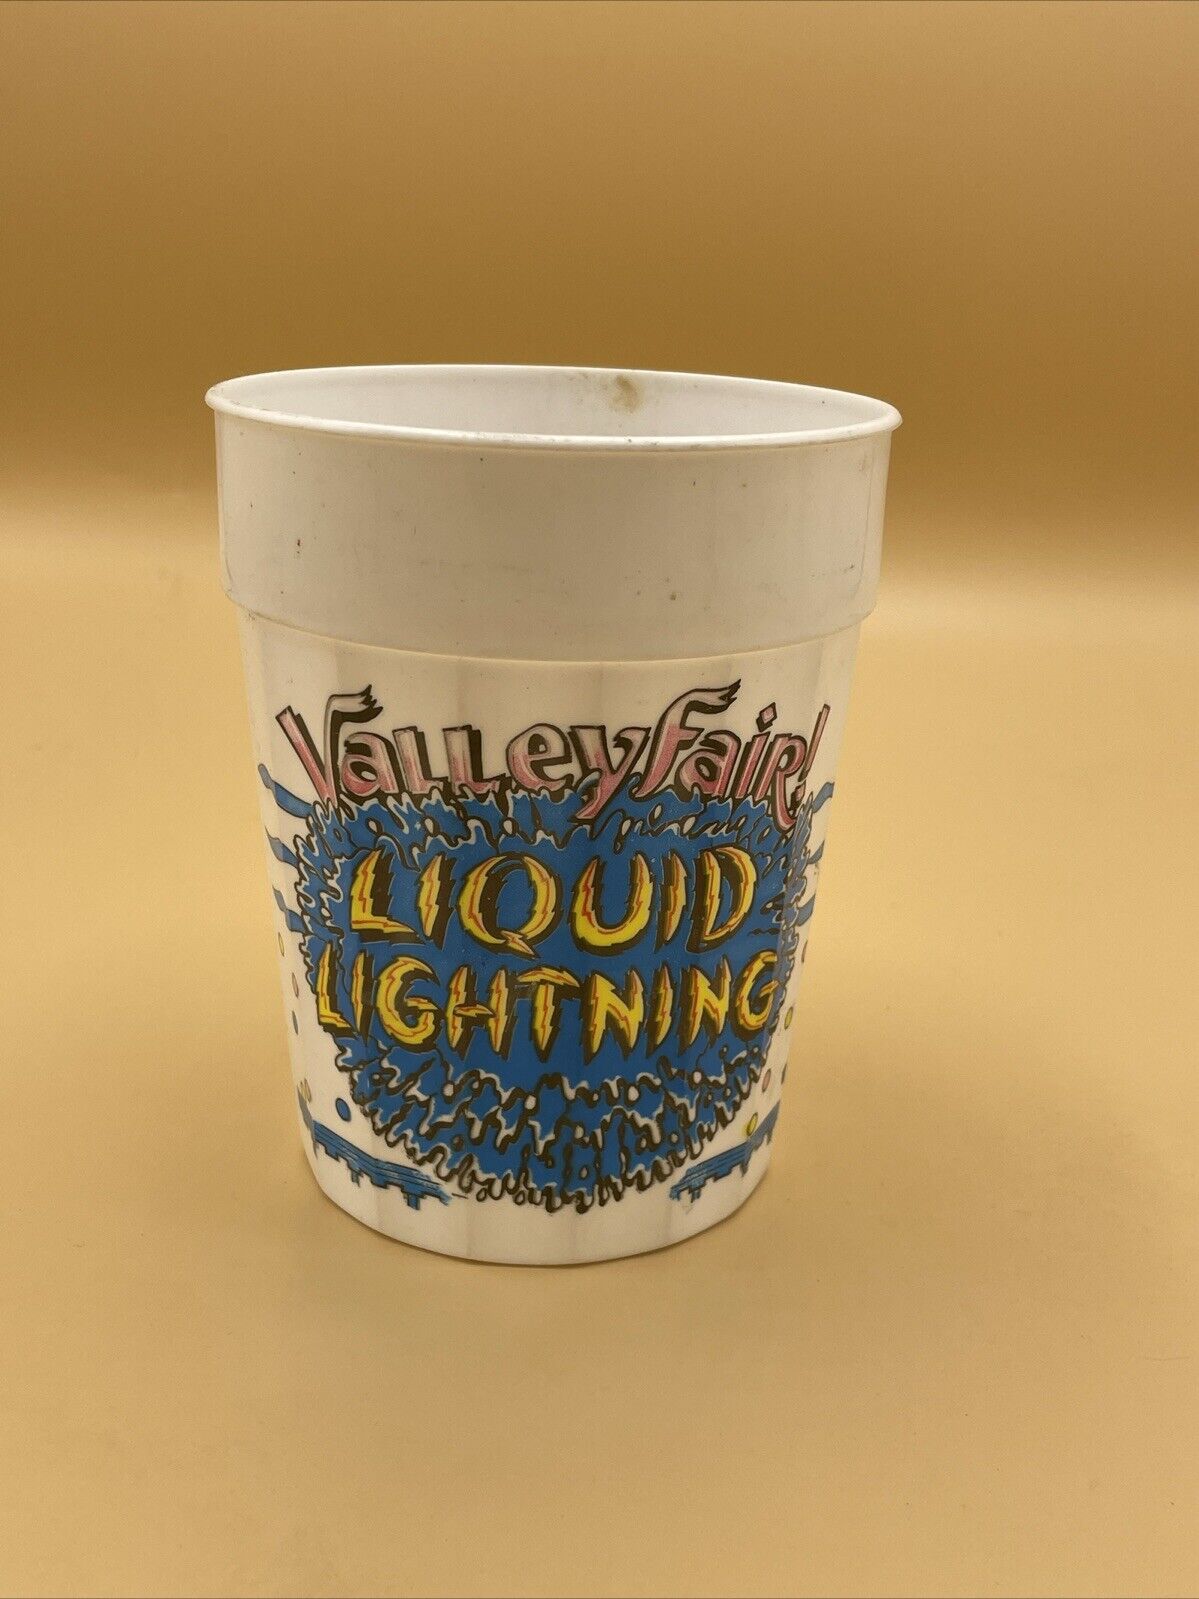 Vintage Valleyfair Glasses Plastic Cups Liquid Lightning Shakopee Minnesota